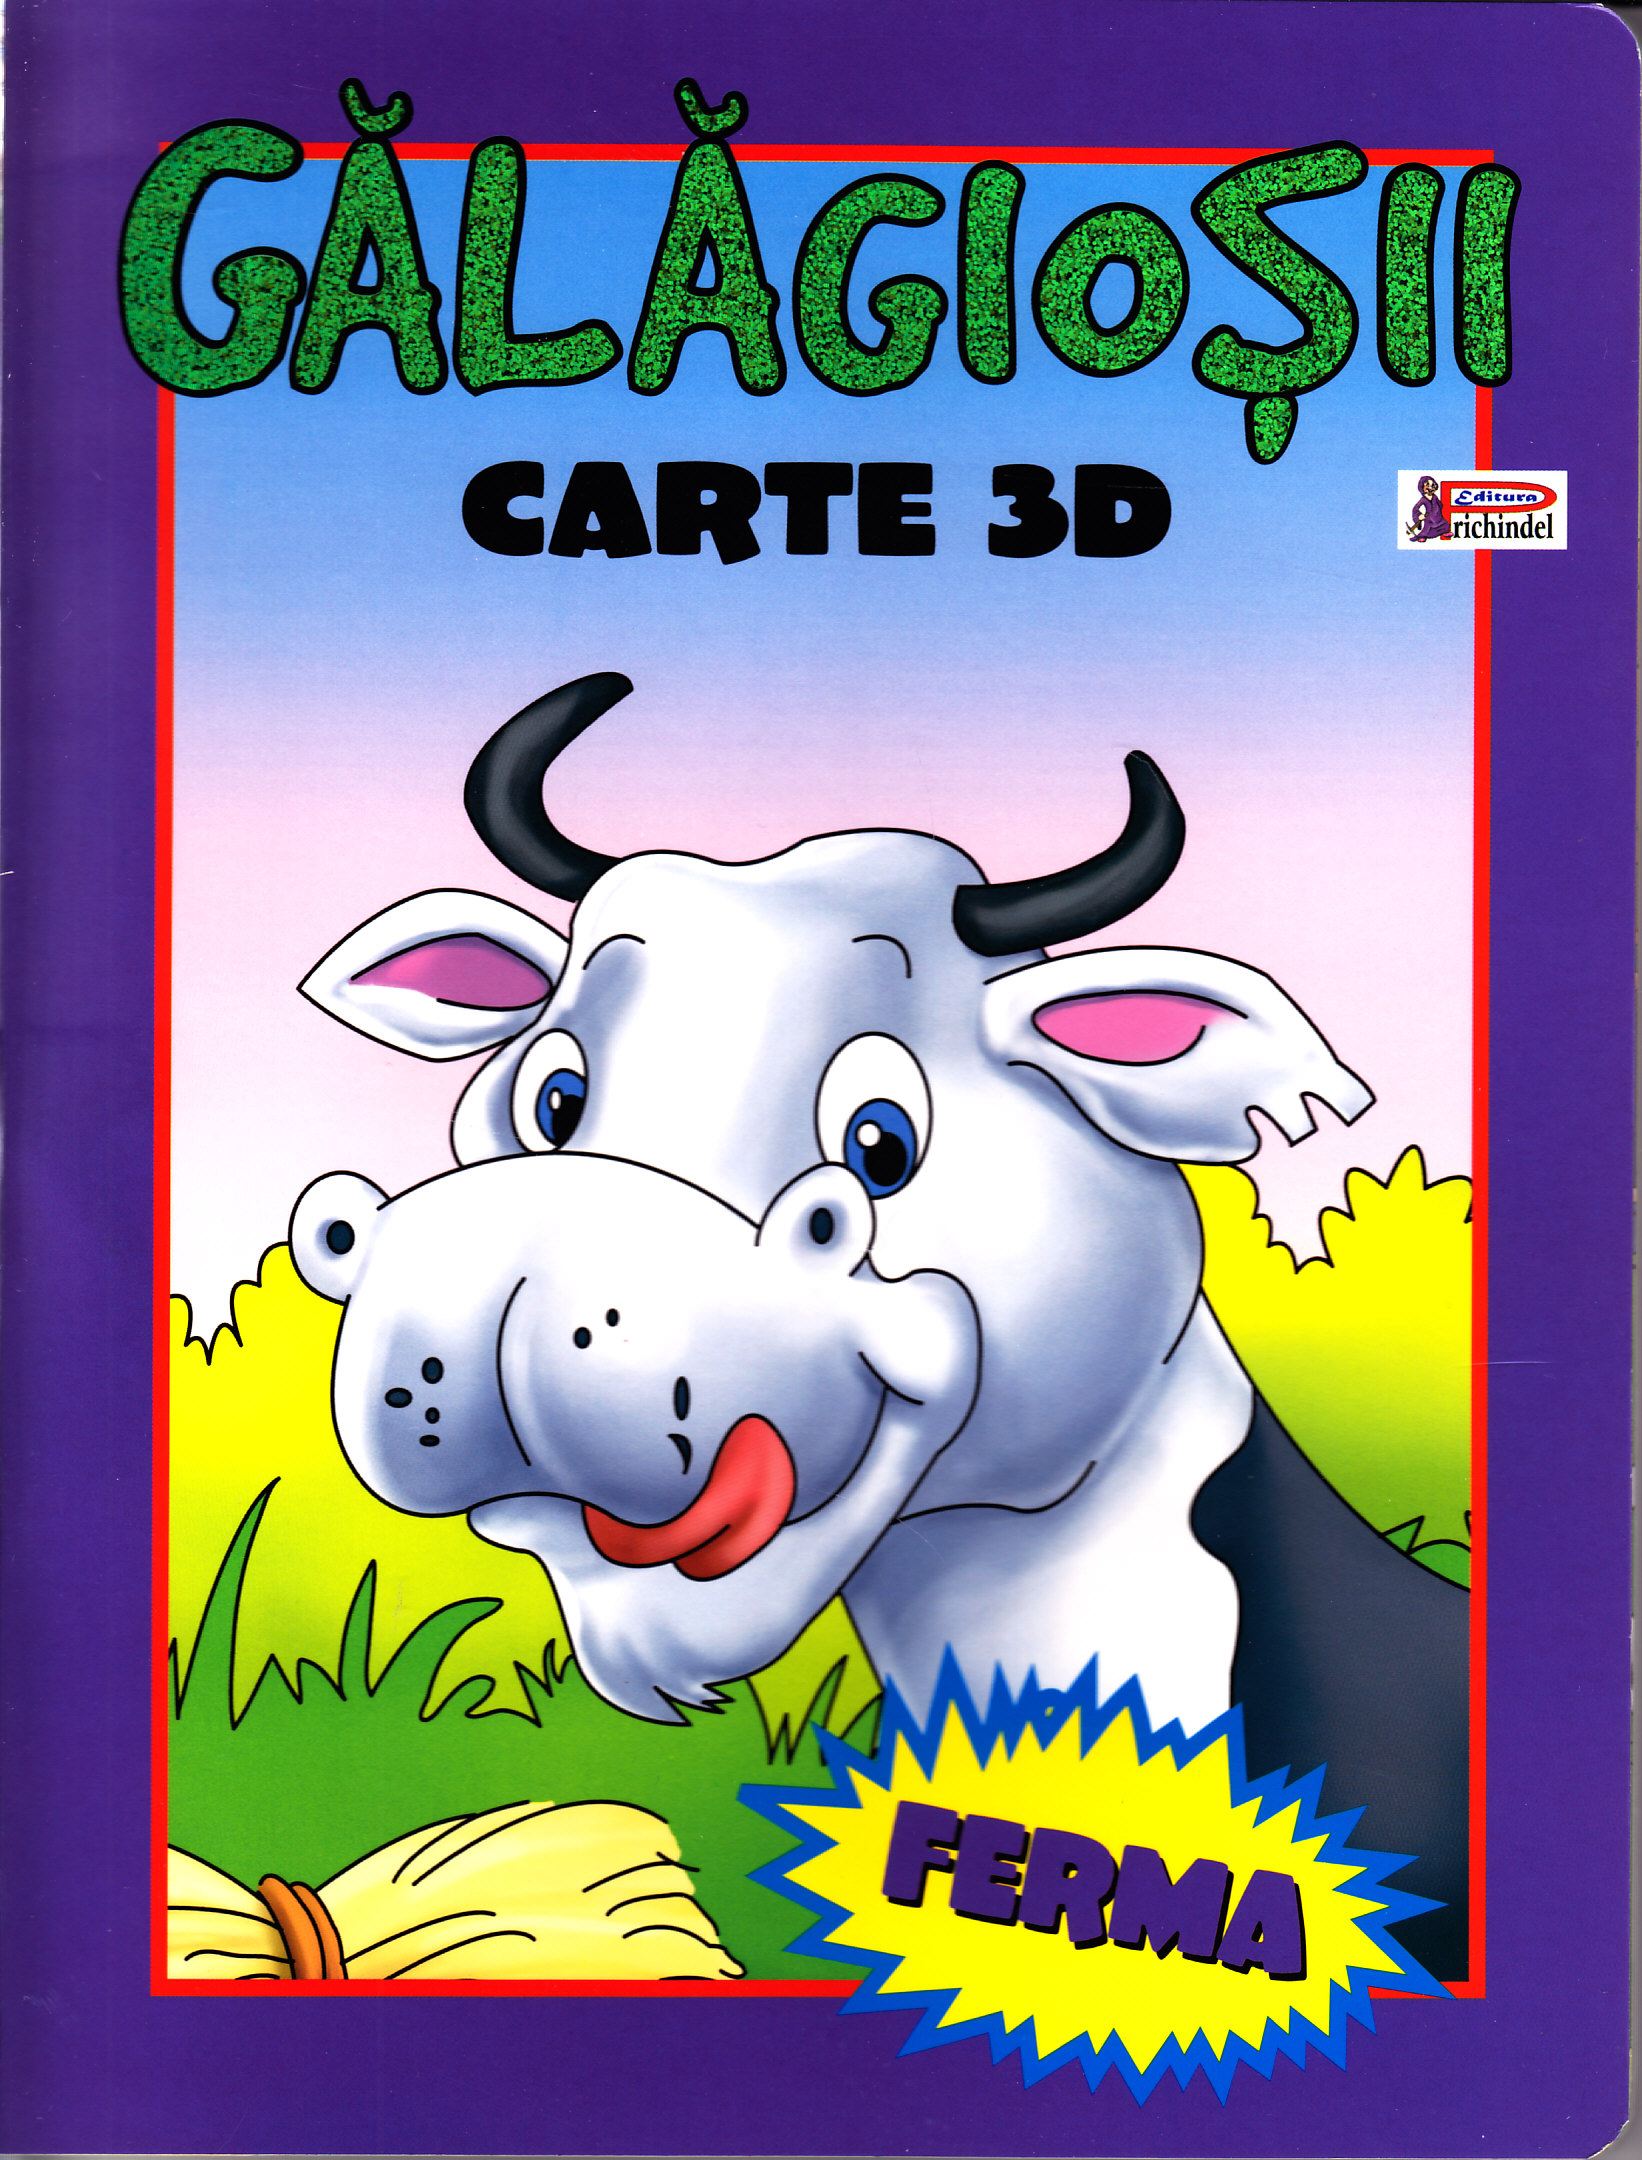 Galagiosii - Carte 3D - Ferma